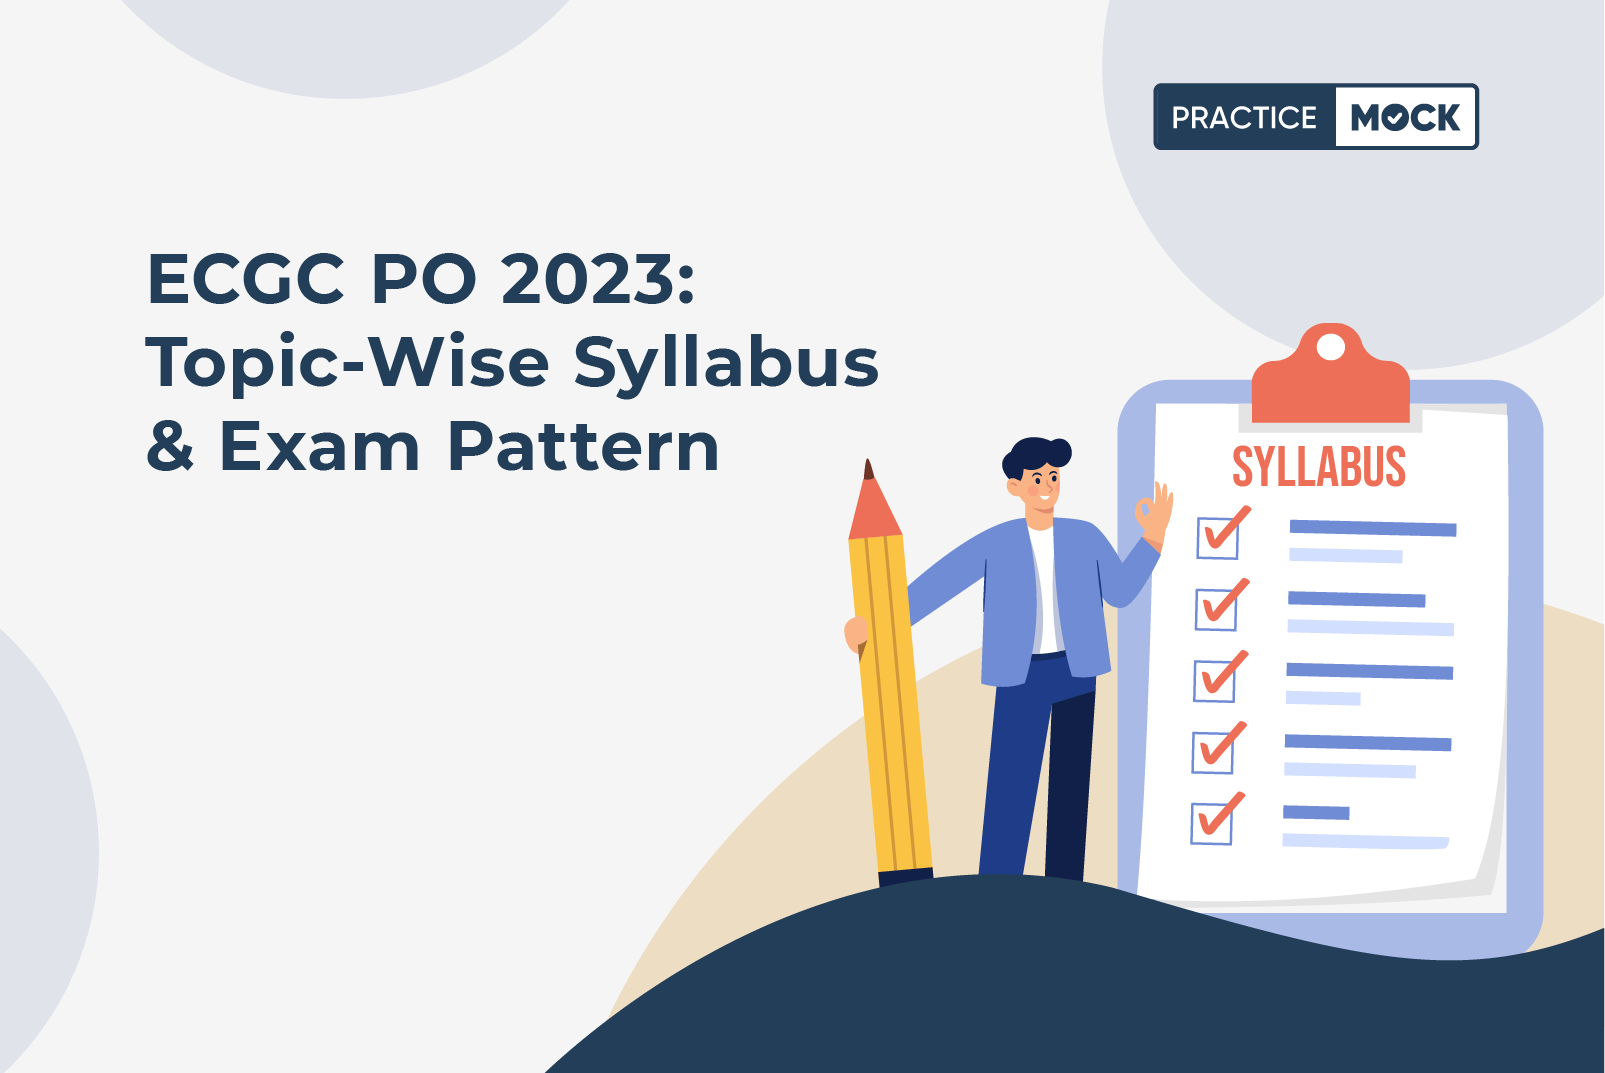 ECGC PO 2023 Topic-Wise Syllabus & Exam Pattern